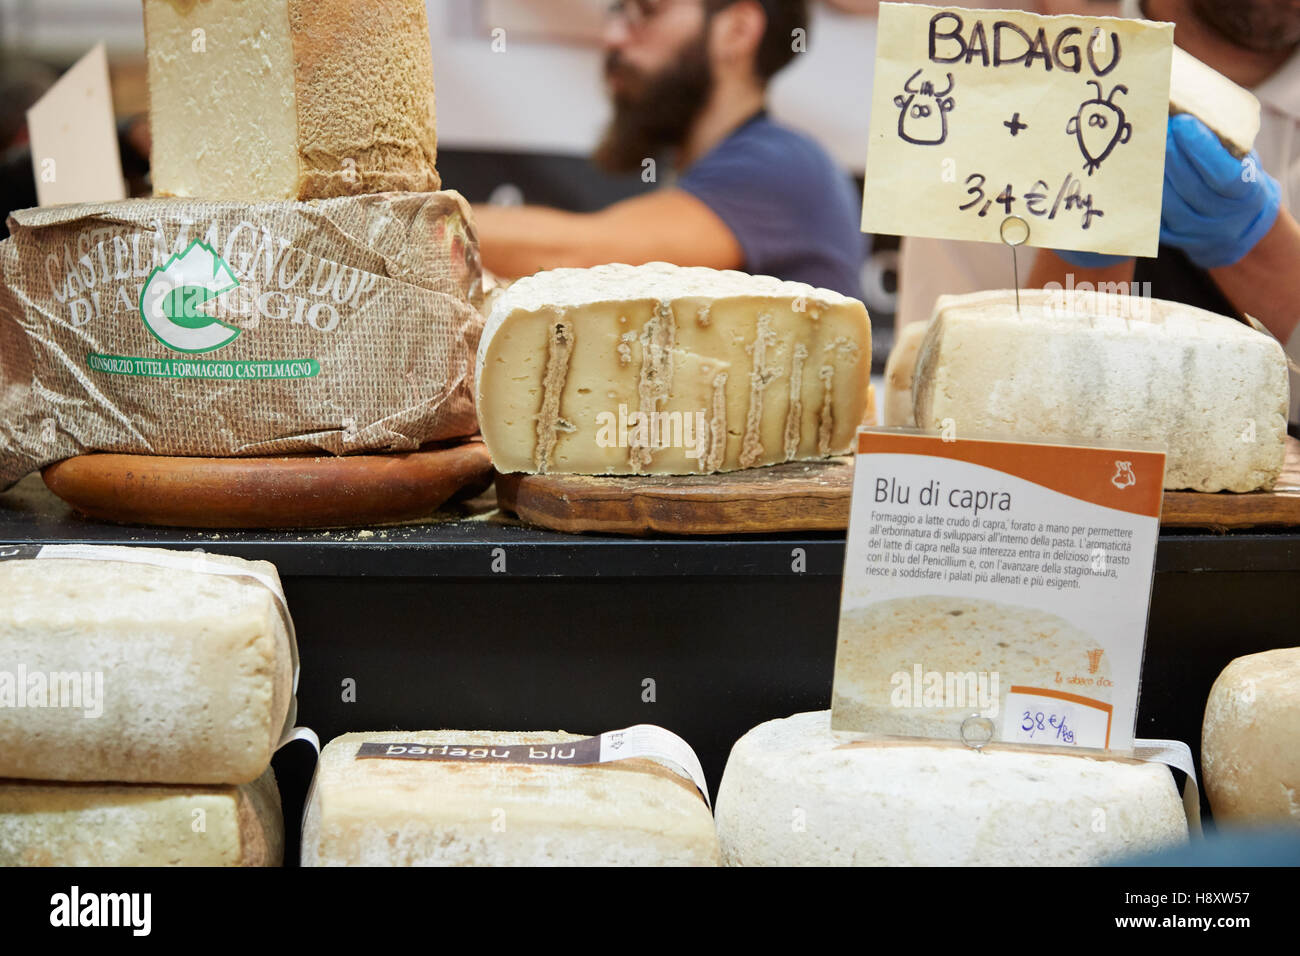 Le fromage de chèvre en vente au cours de la truffe blanche d'Alba en juste, Italie Banque D'Images